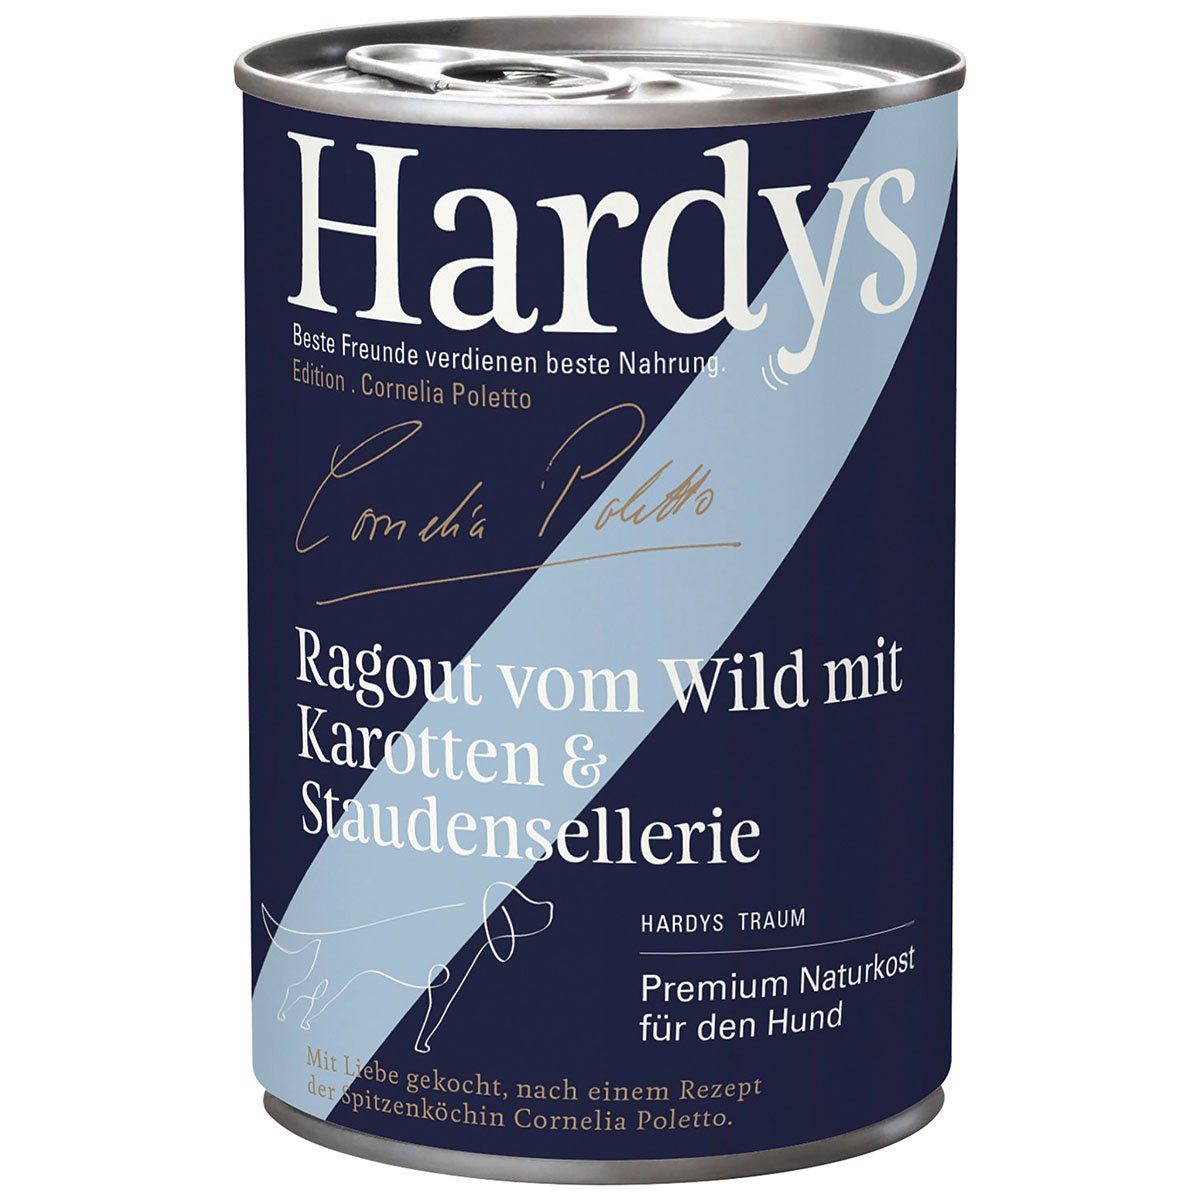 Hardys Ed. Cornelia Poletto Ragout vom Wild mit Karotten & Staudensellerie 6x400g von Hardys